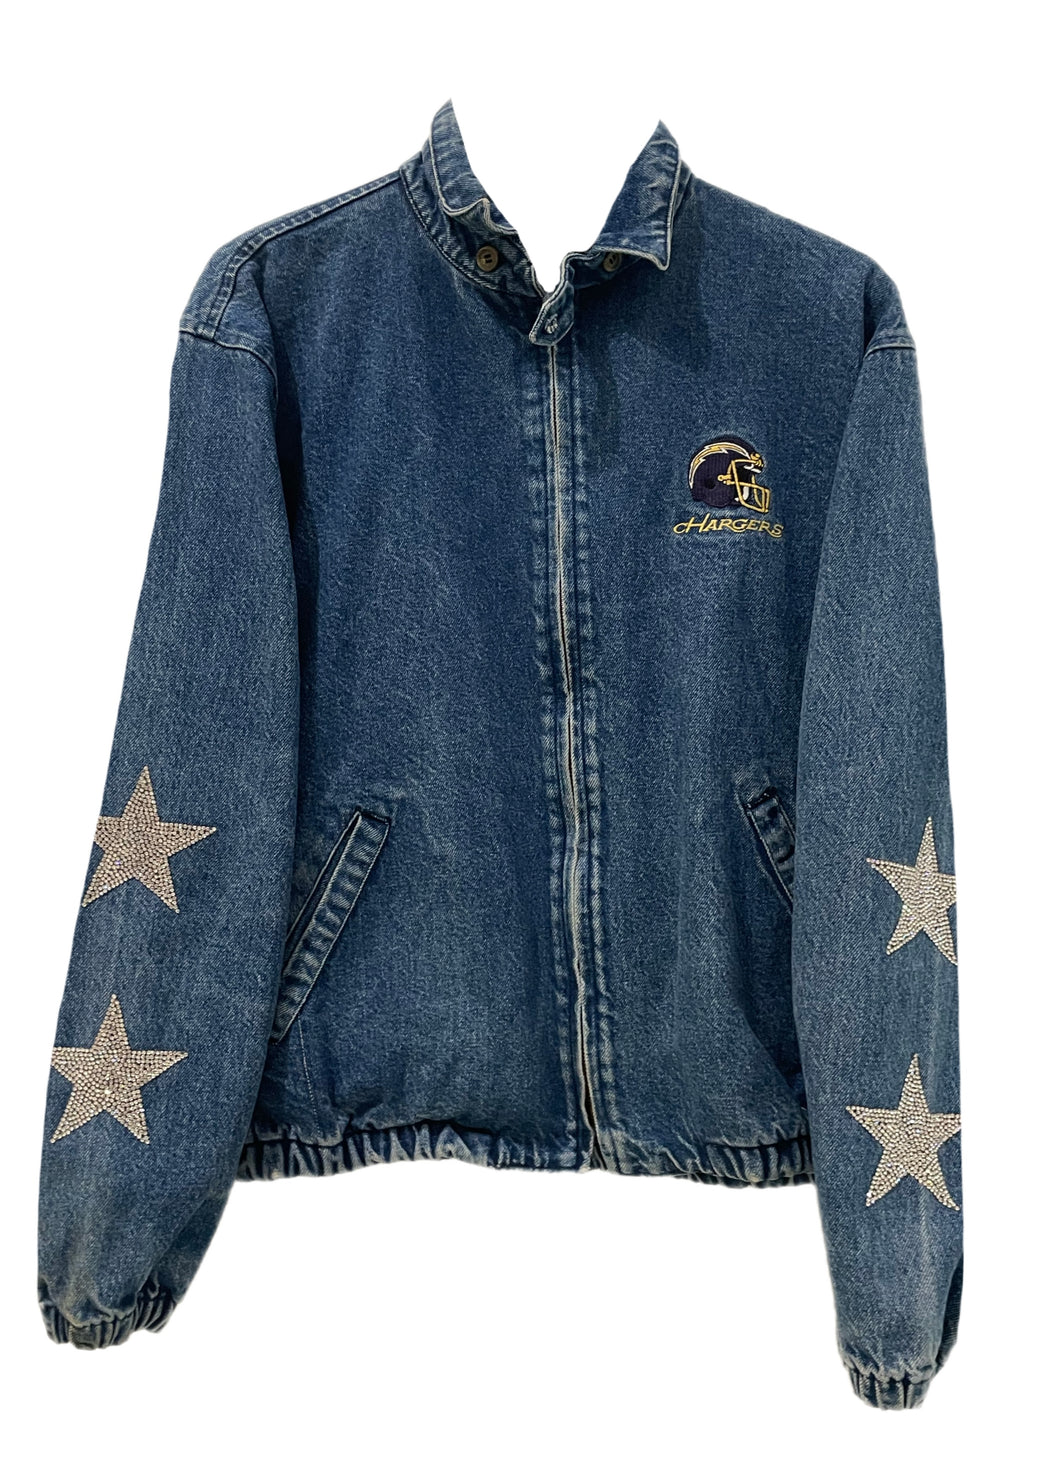 LA Chargers, NFL “Super Rare Find” One of a KIND 80’s Vintage Denim/Jean Jacket with Crystal Star Design